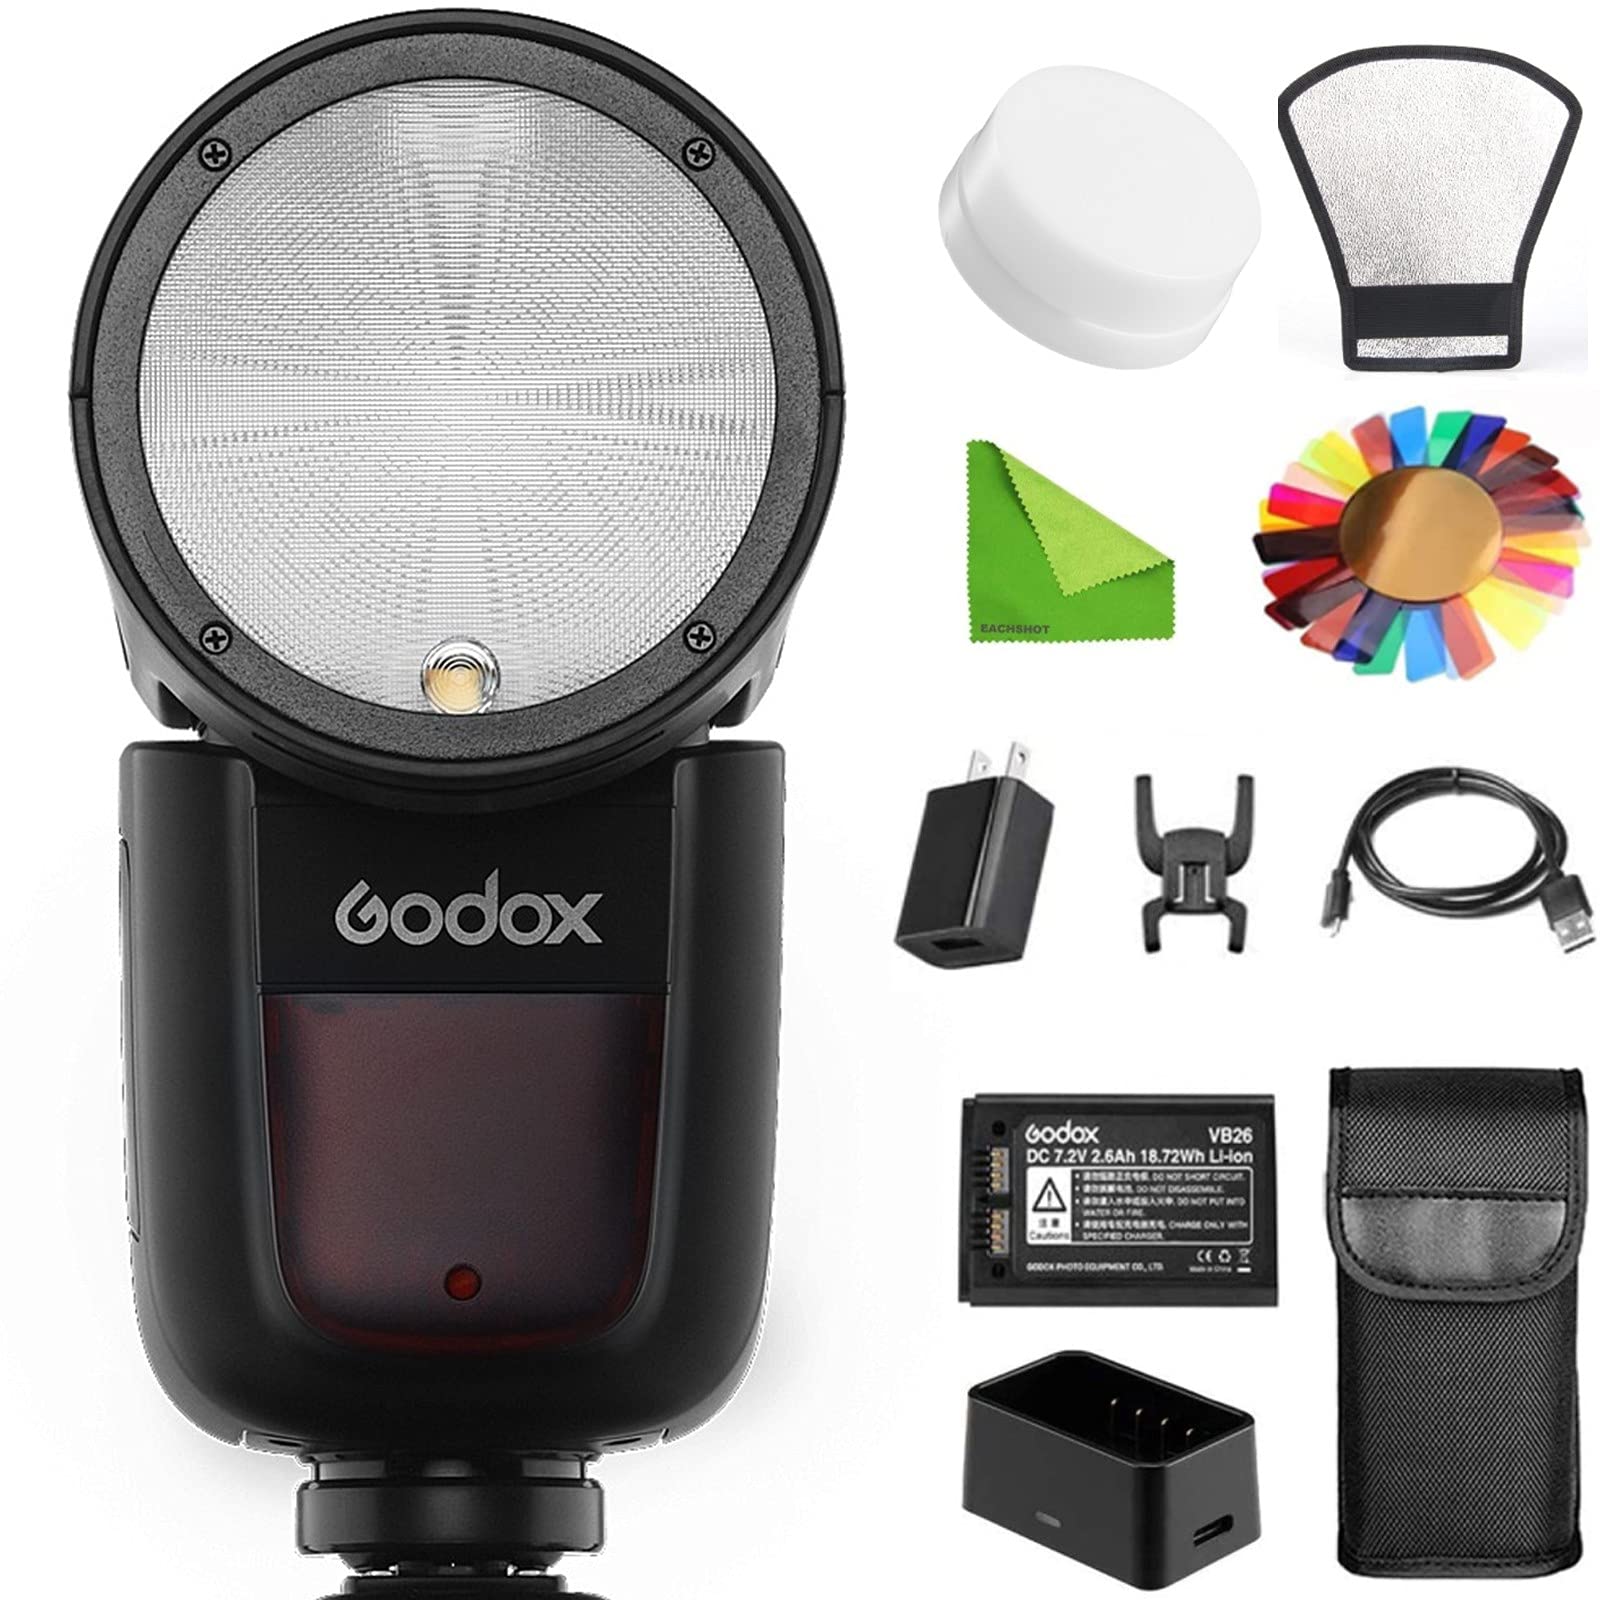 Godox V1-C Godox Flash Speedlight Round Head Camera Speedlite 2.4